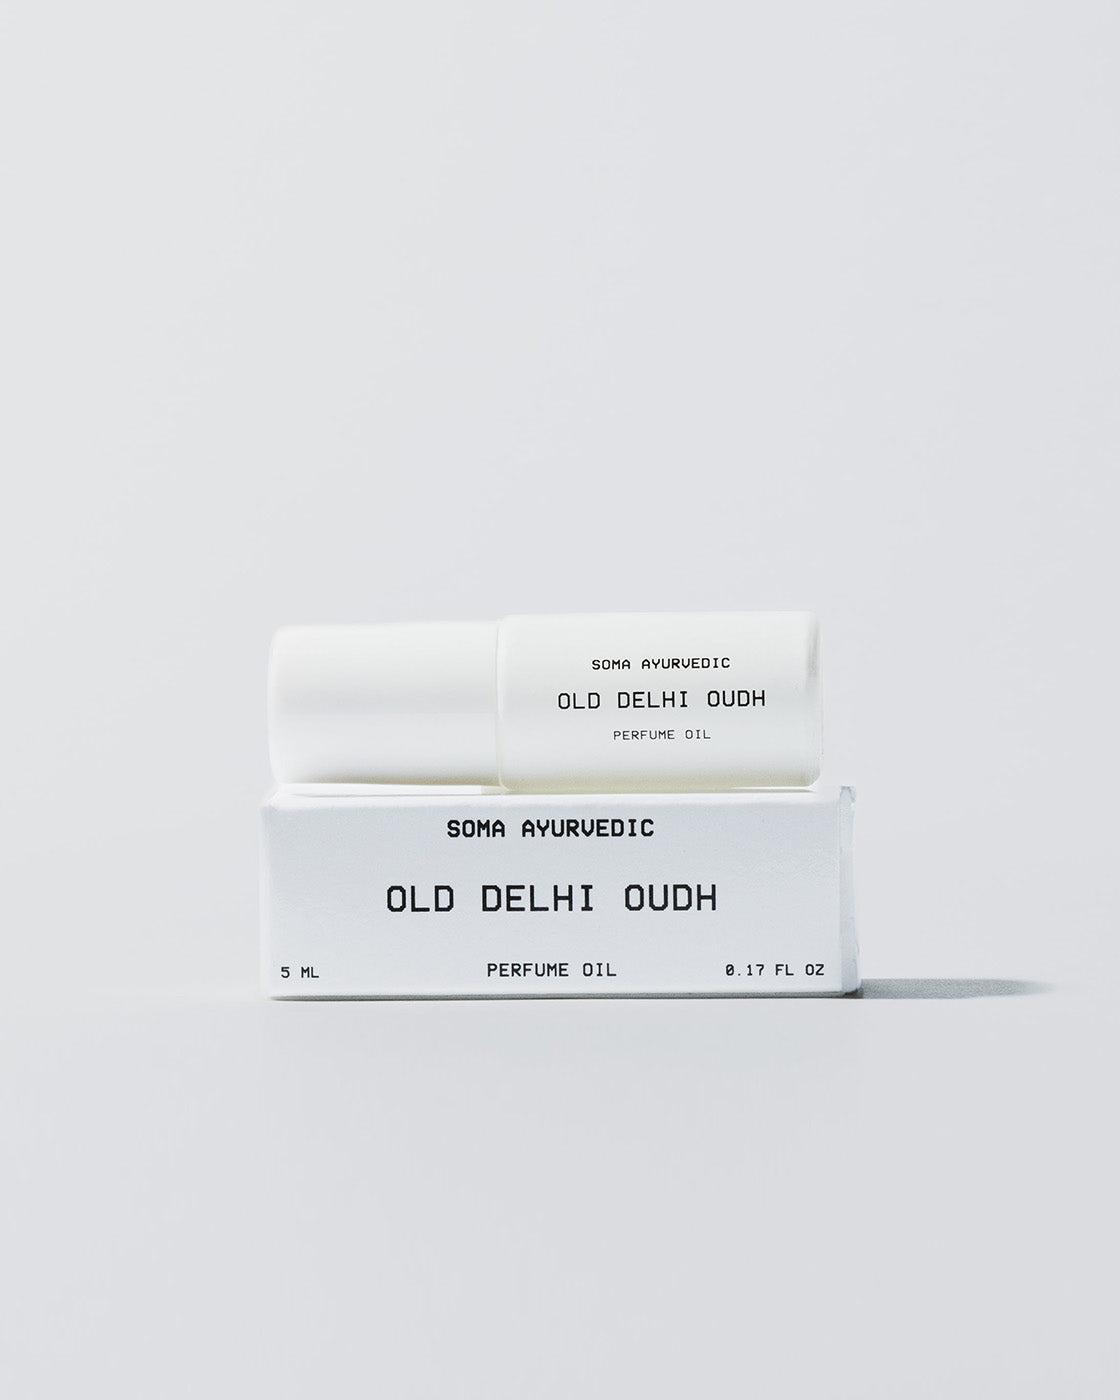 OLD DELHI OUDH - Perfume Oil